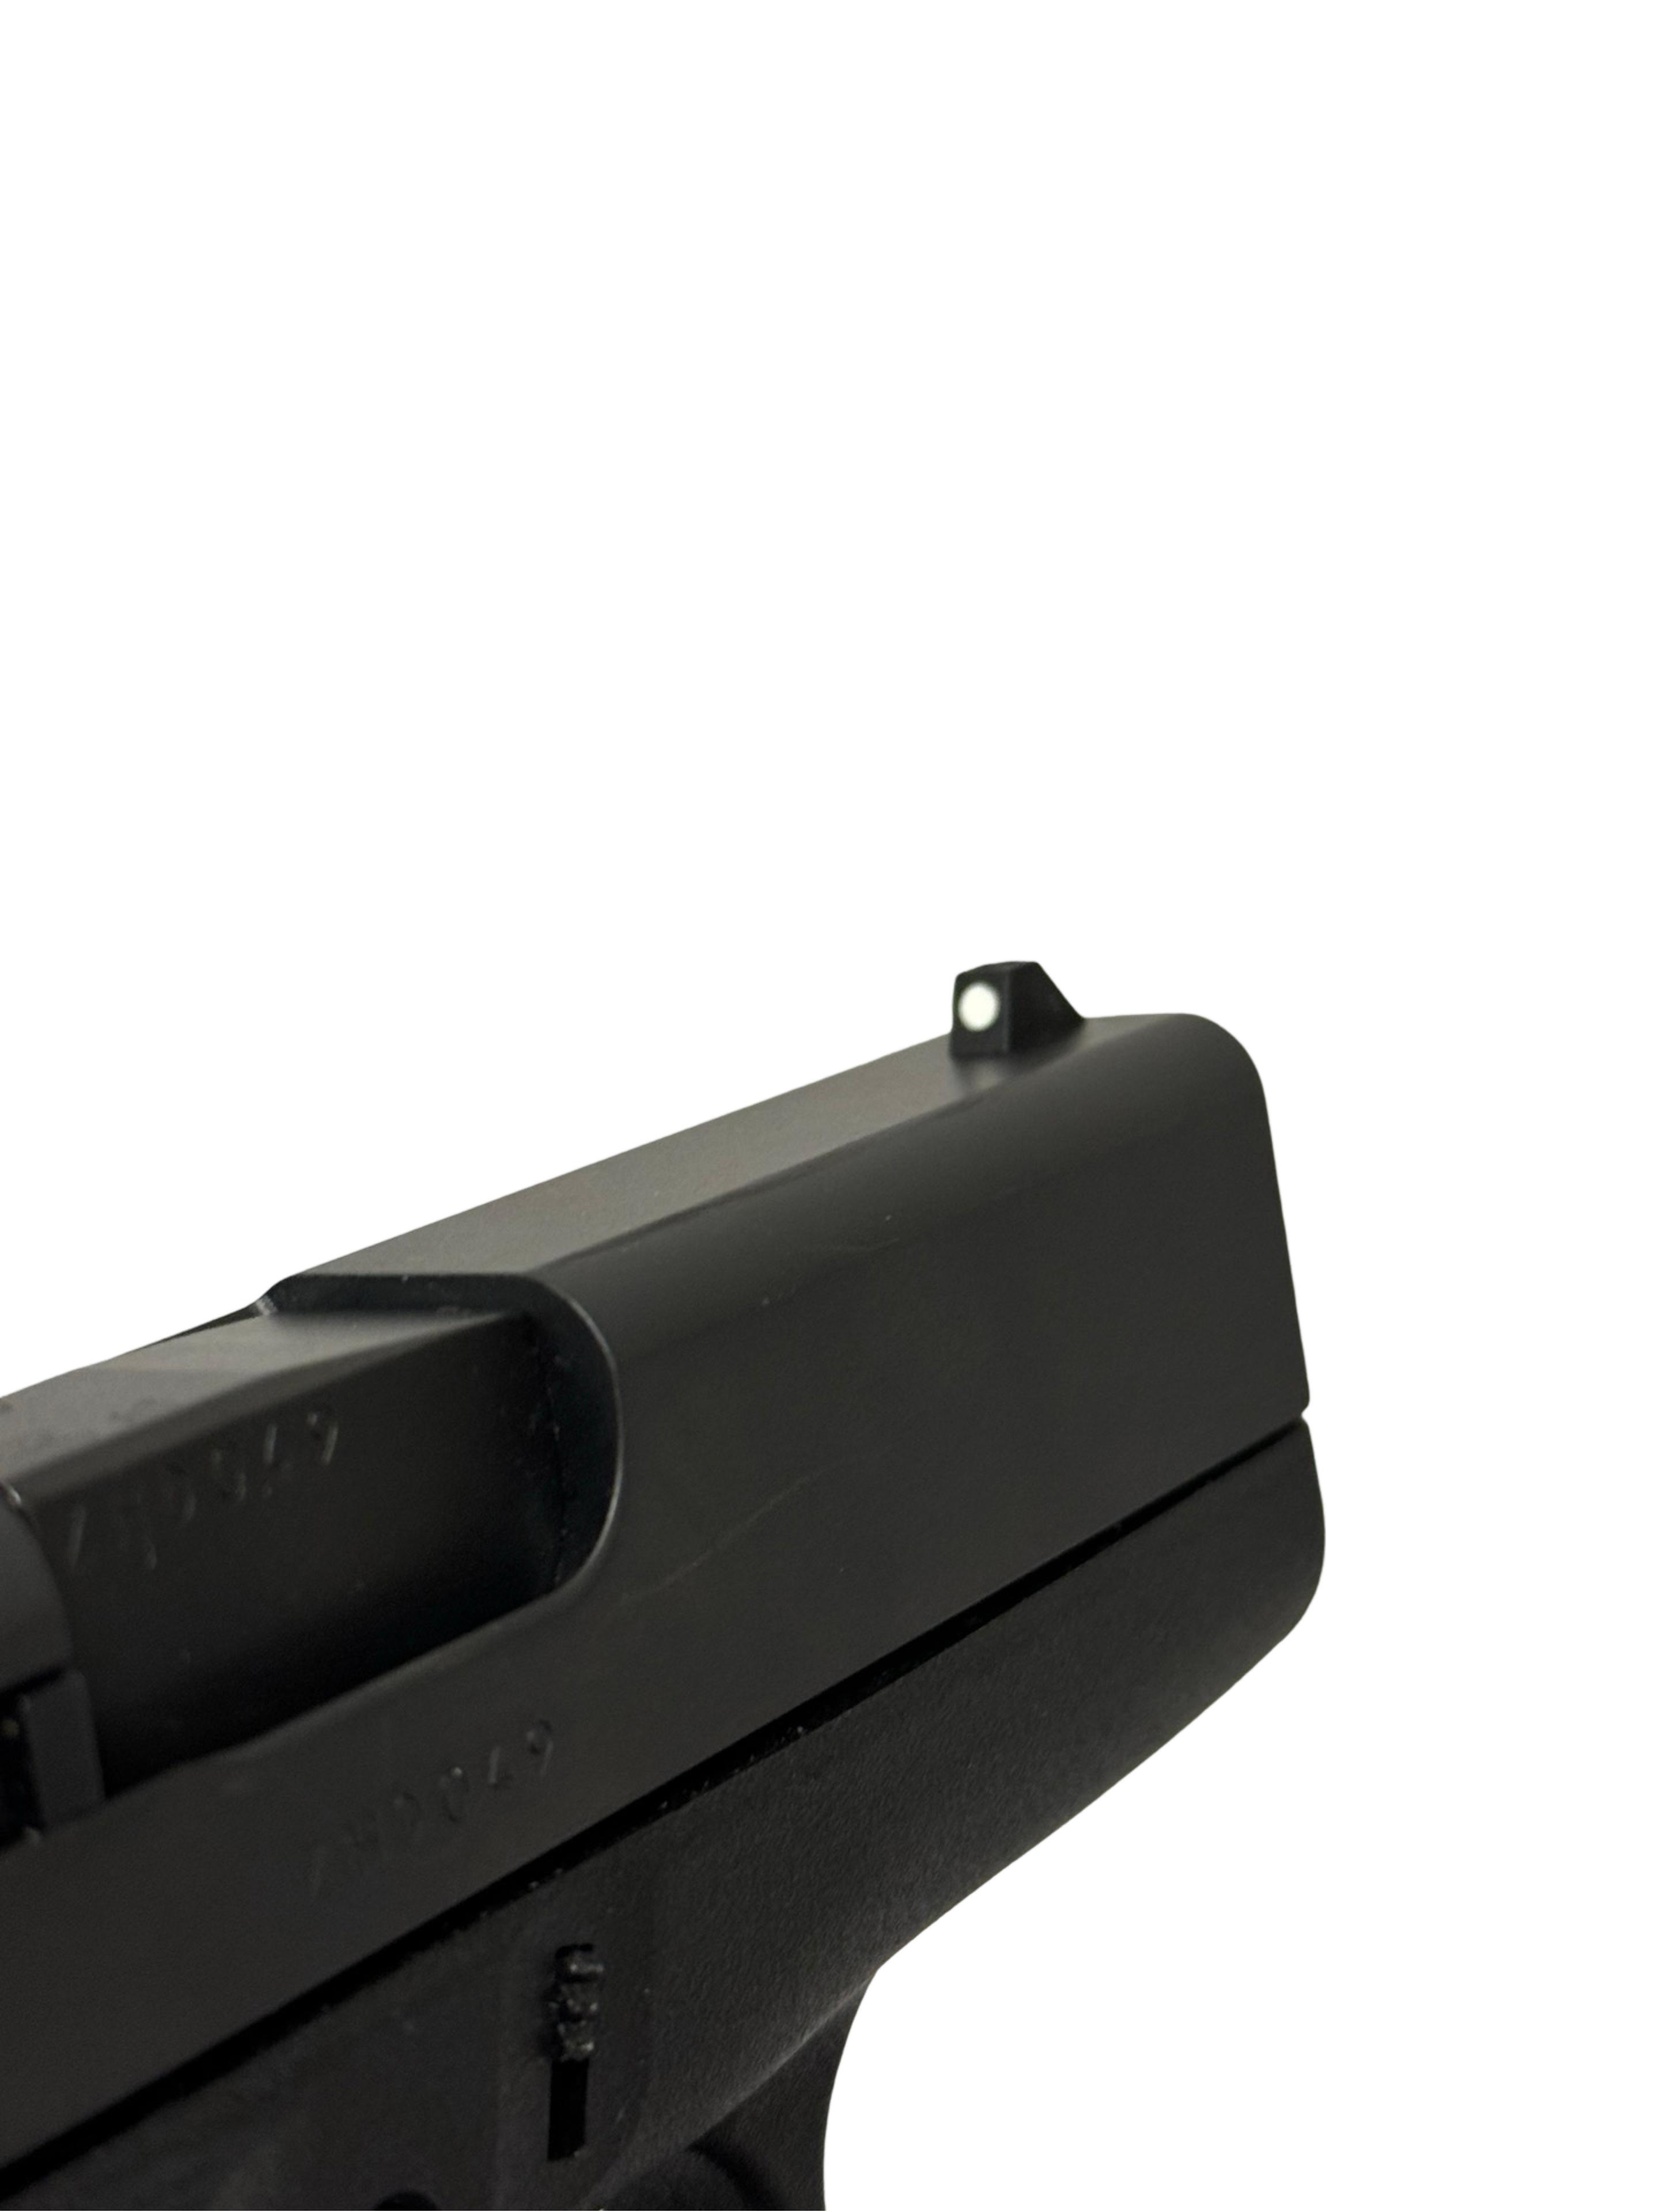 NIB Glock 43 9mm Semi-Automatic Pistol 